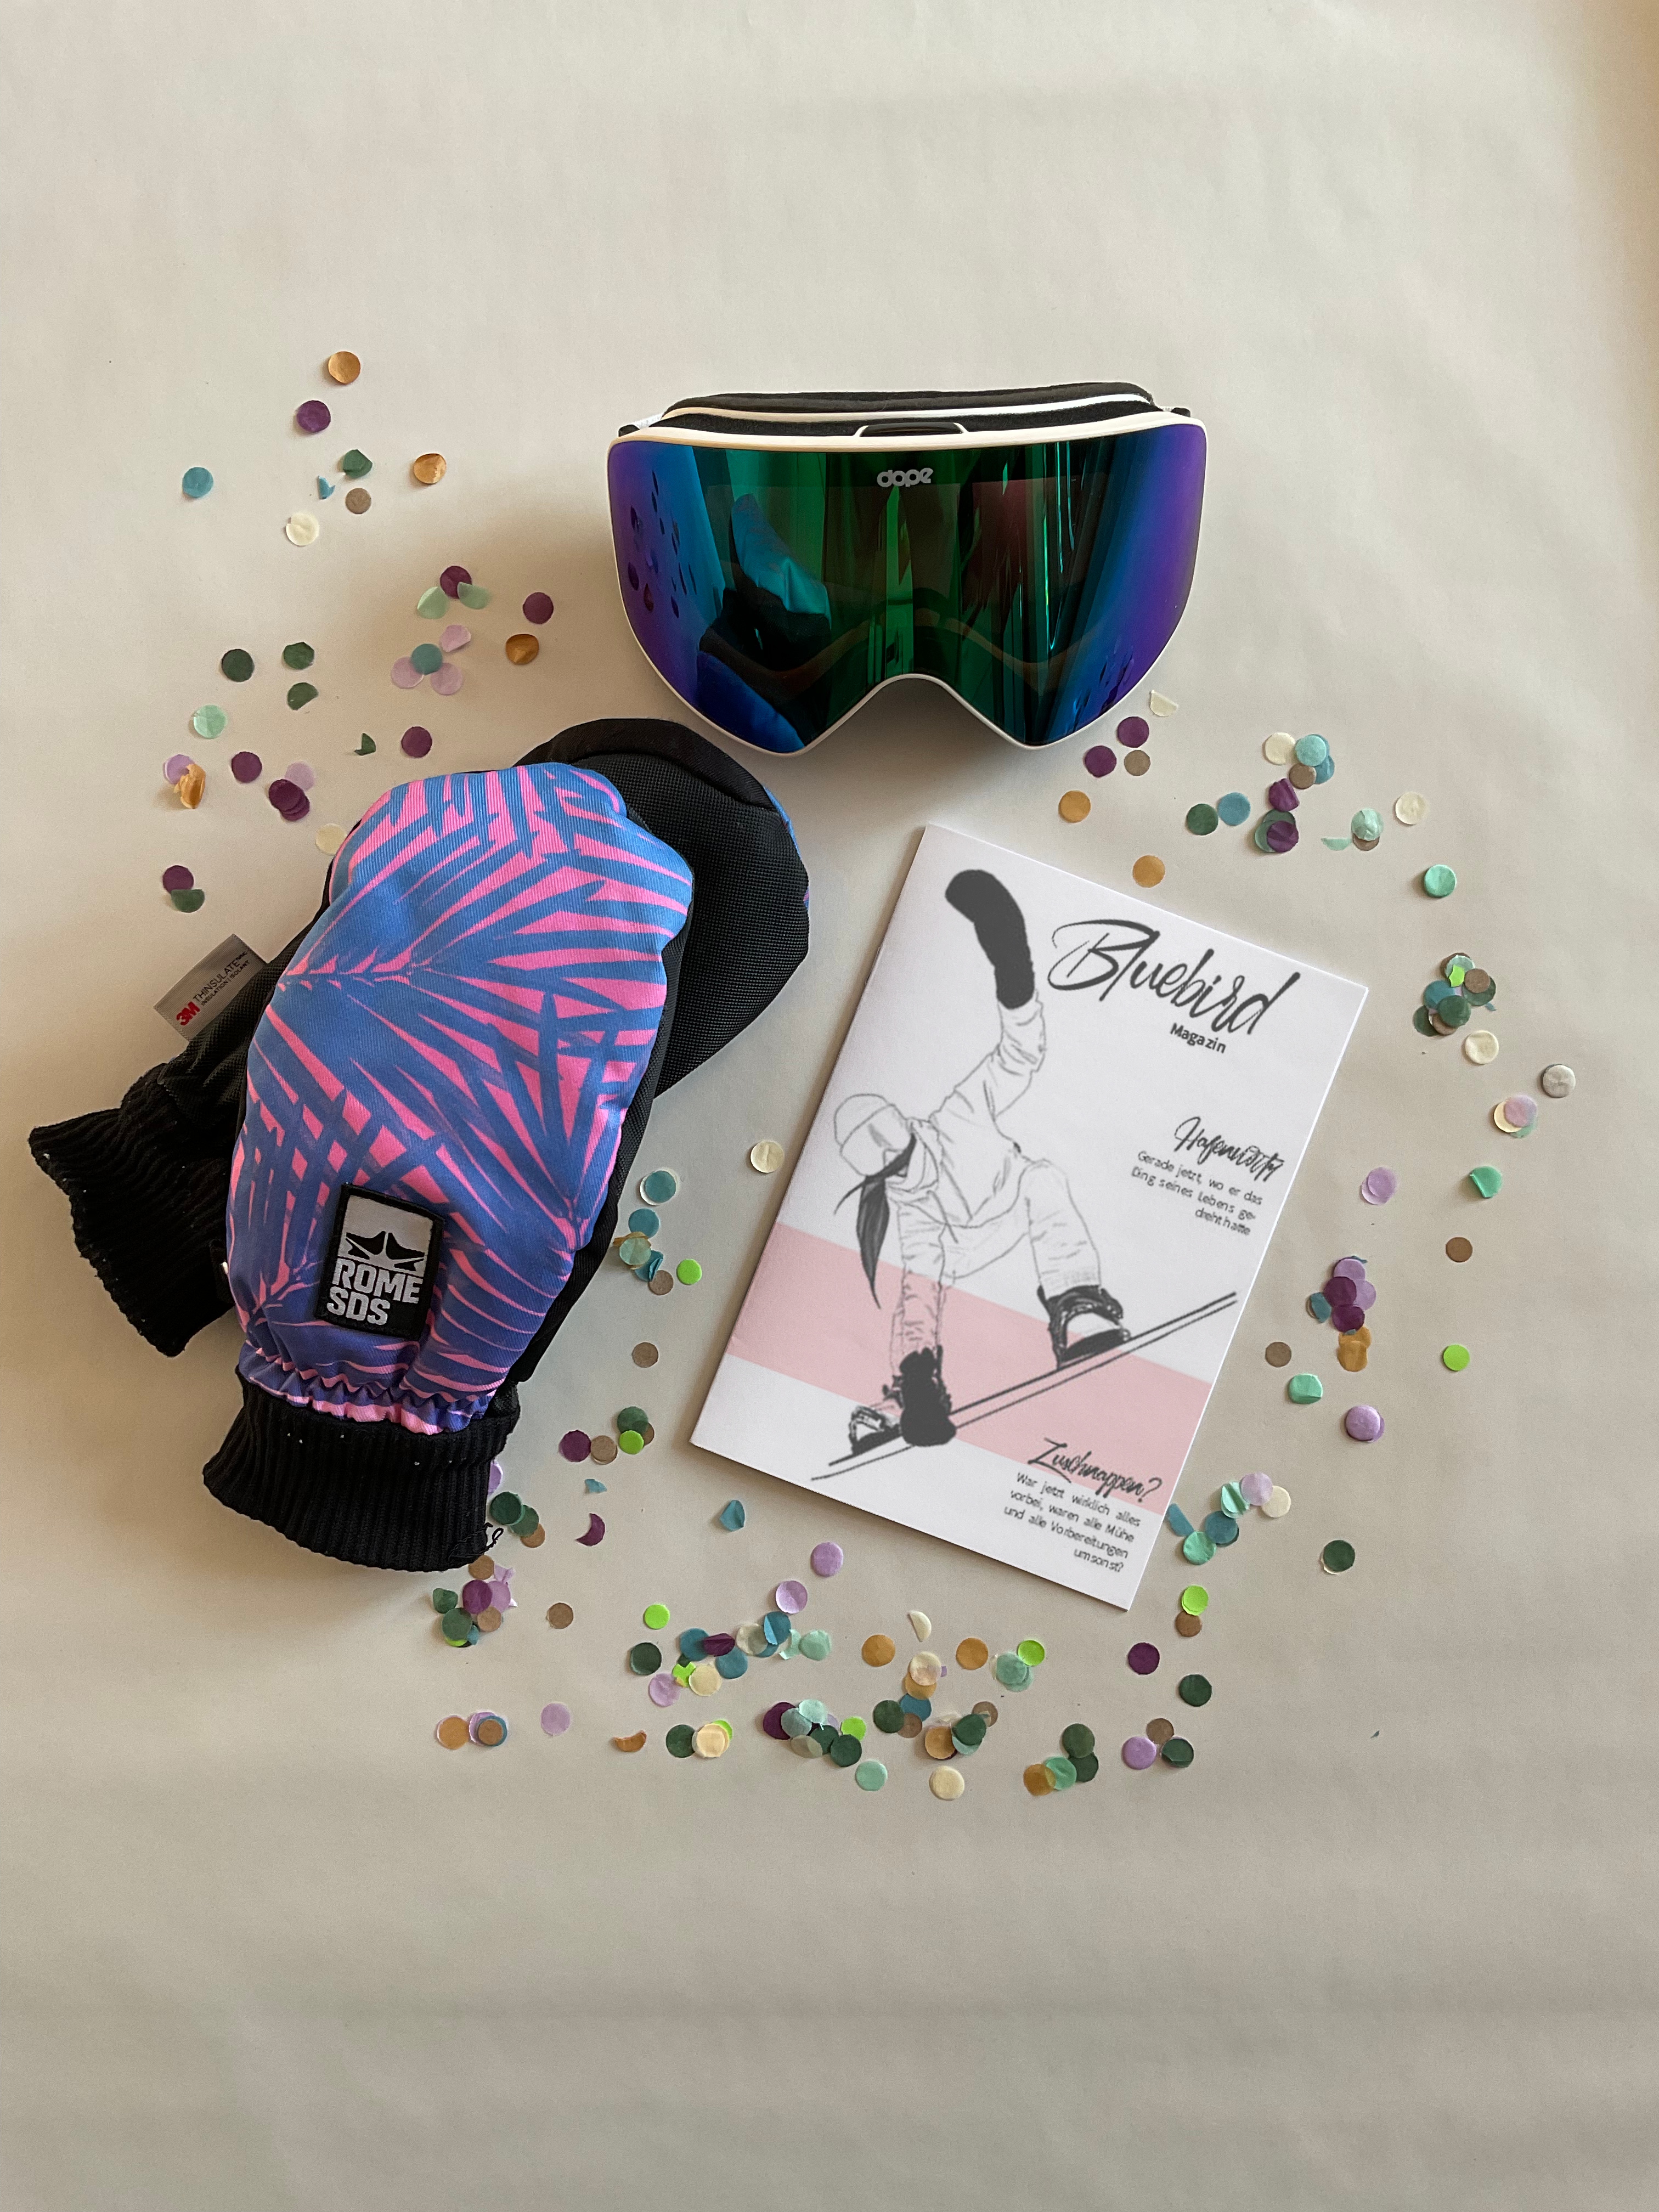 Broschüre, Handschuhe und Snowboardbrille mit Konfetti